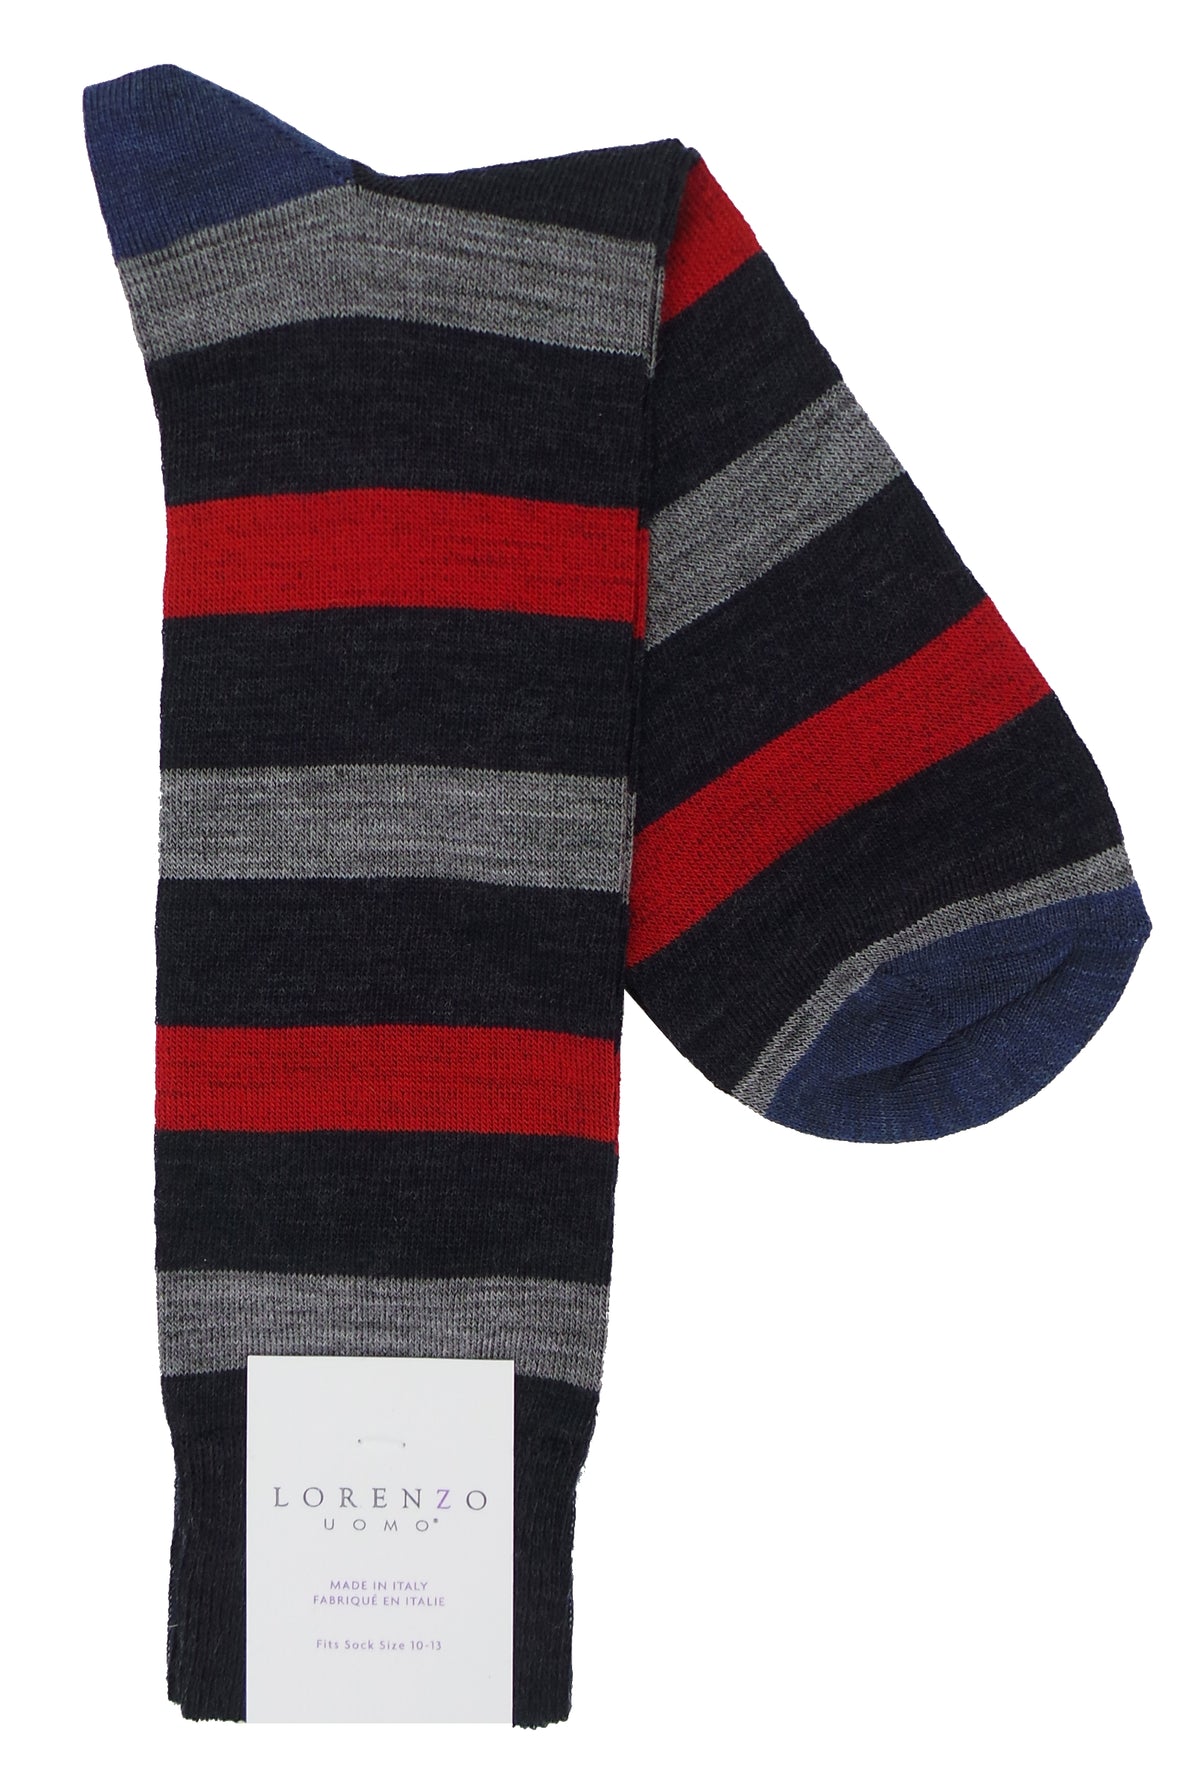 Lorenzo Uomo Bar Stripe Merino Wool Blend Socks